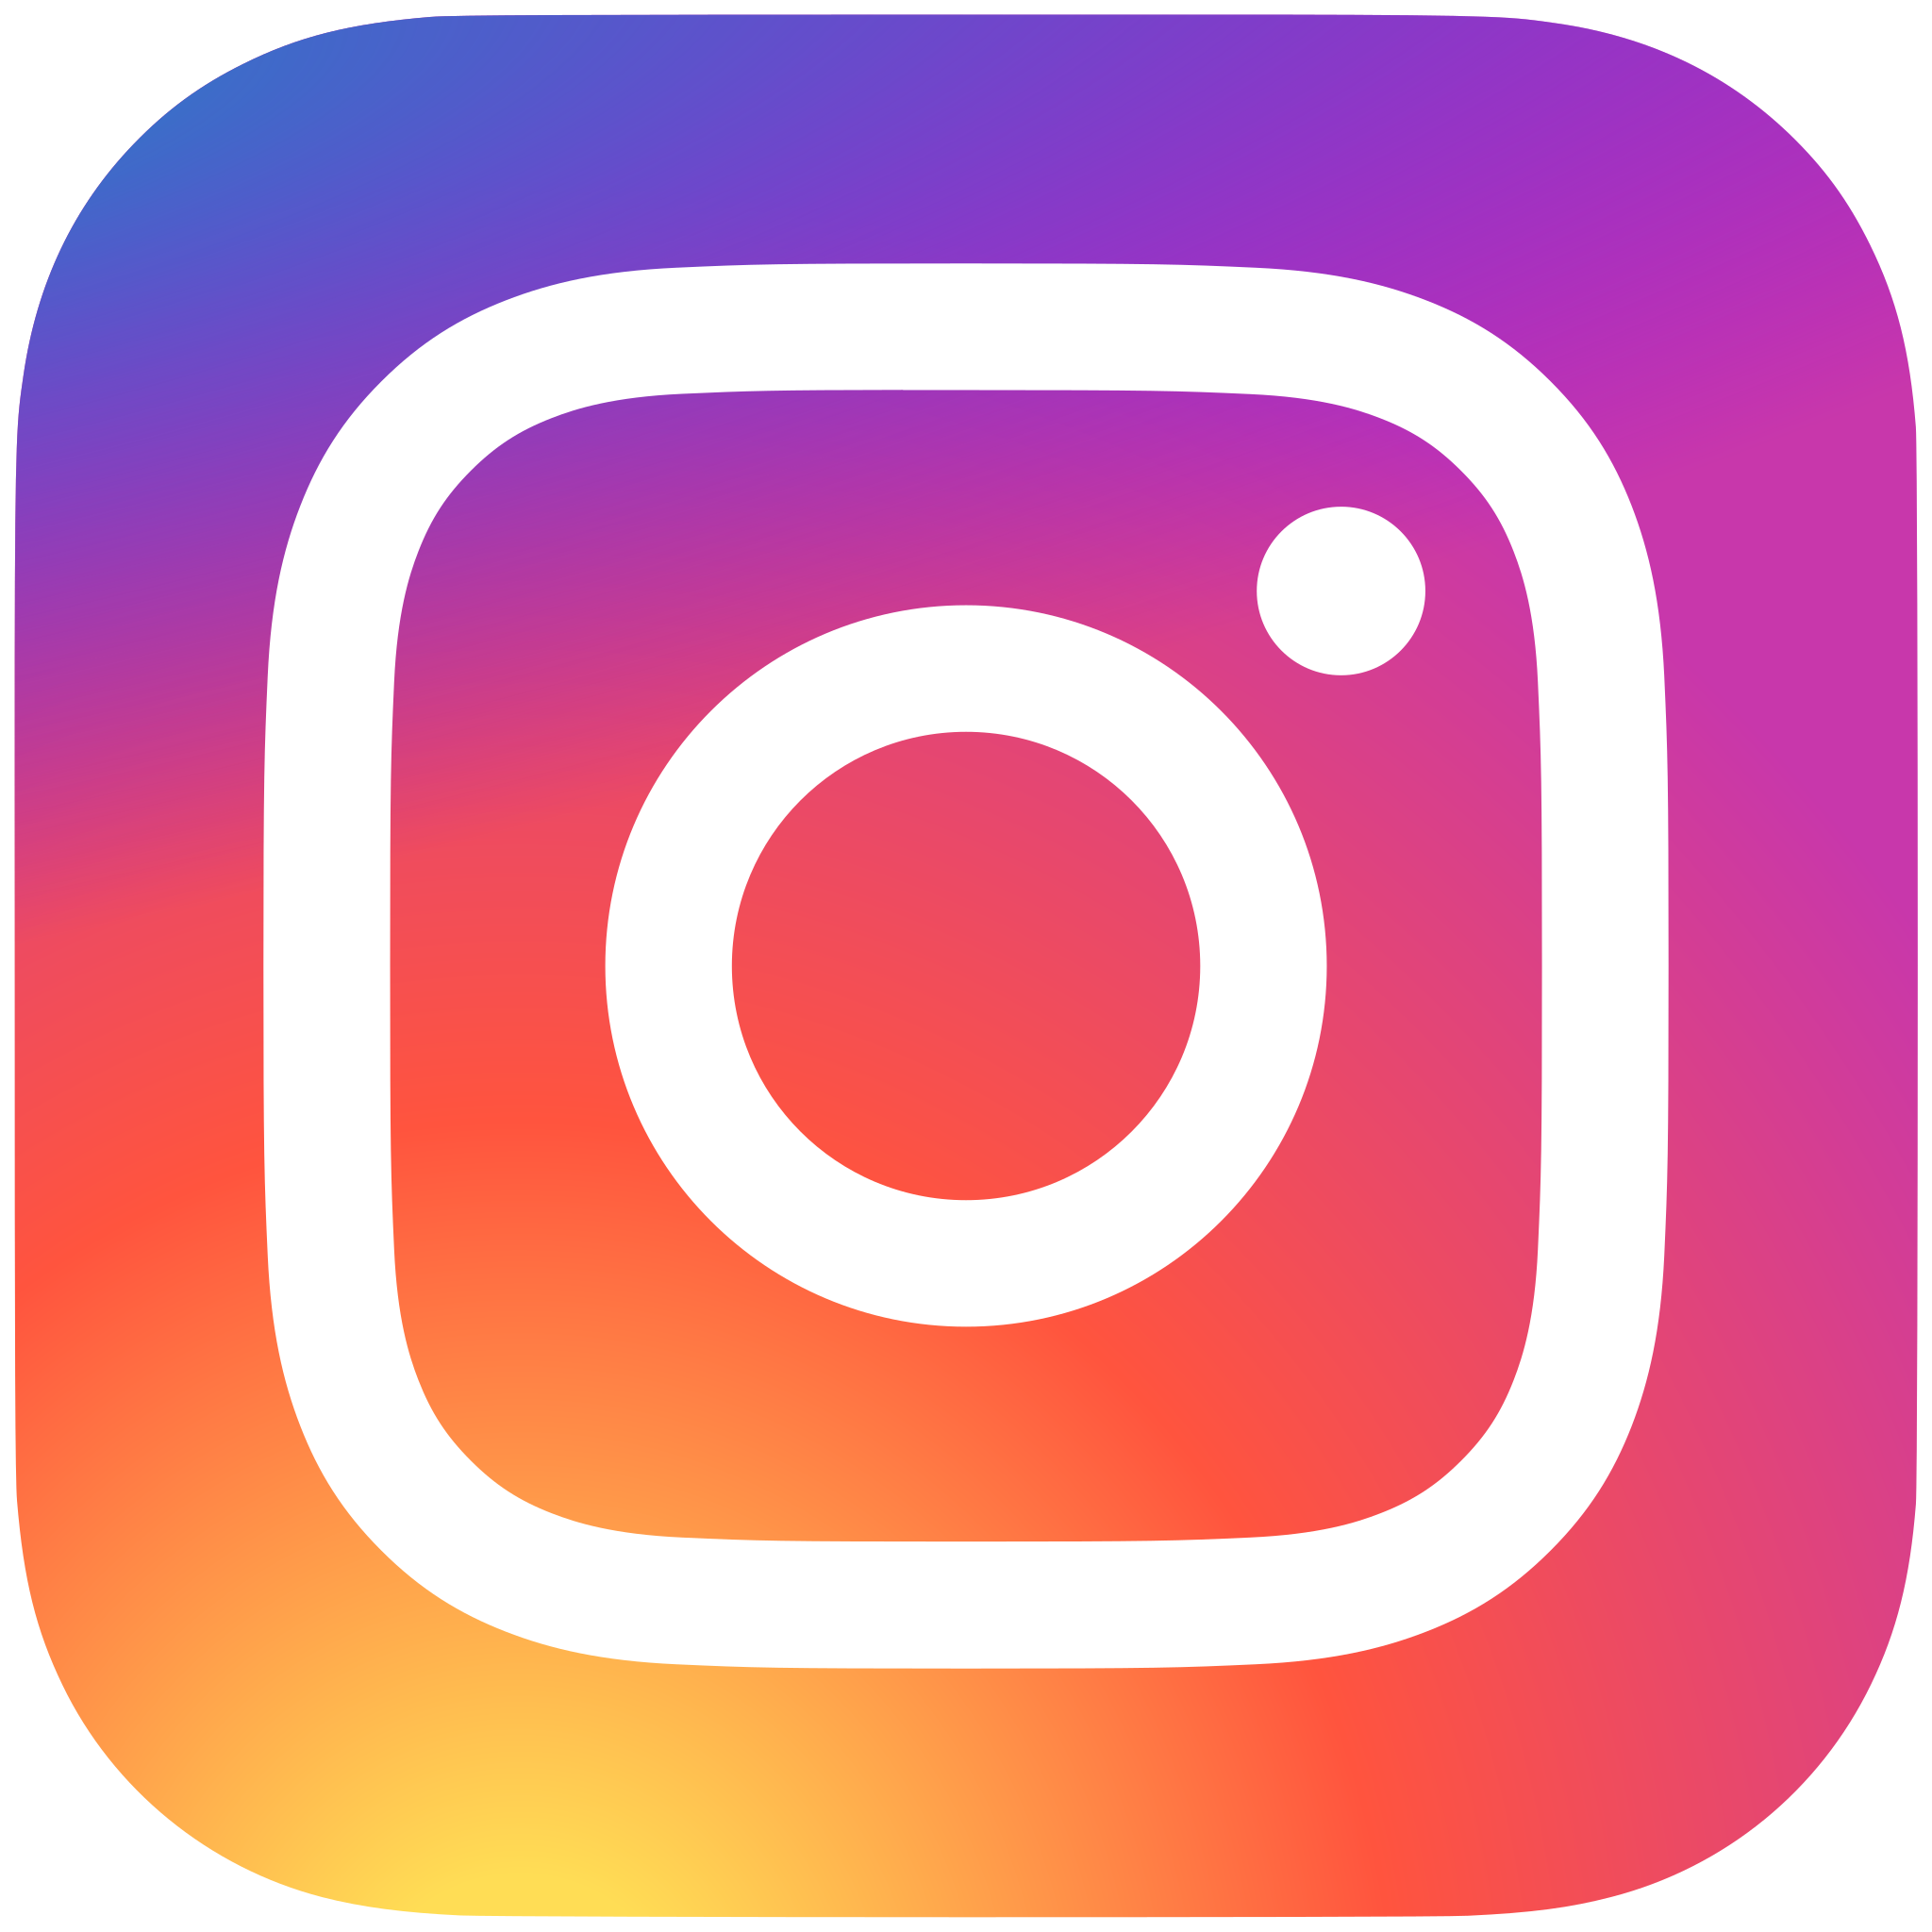 Instagram_logo_2016.svg.png, 518kB